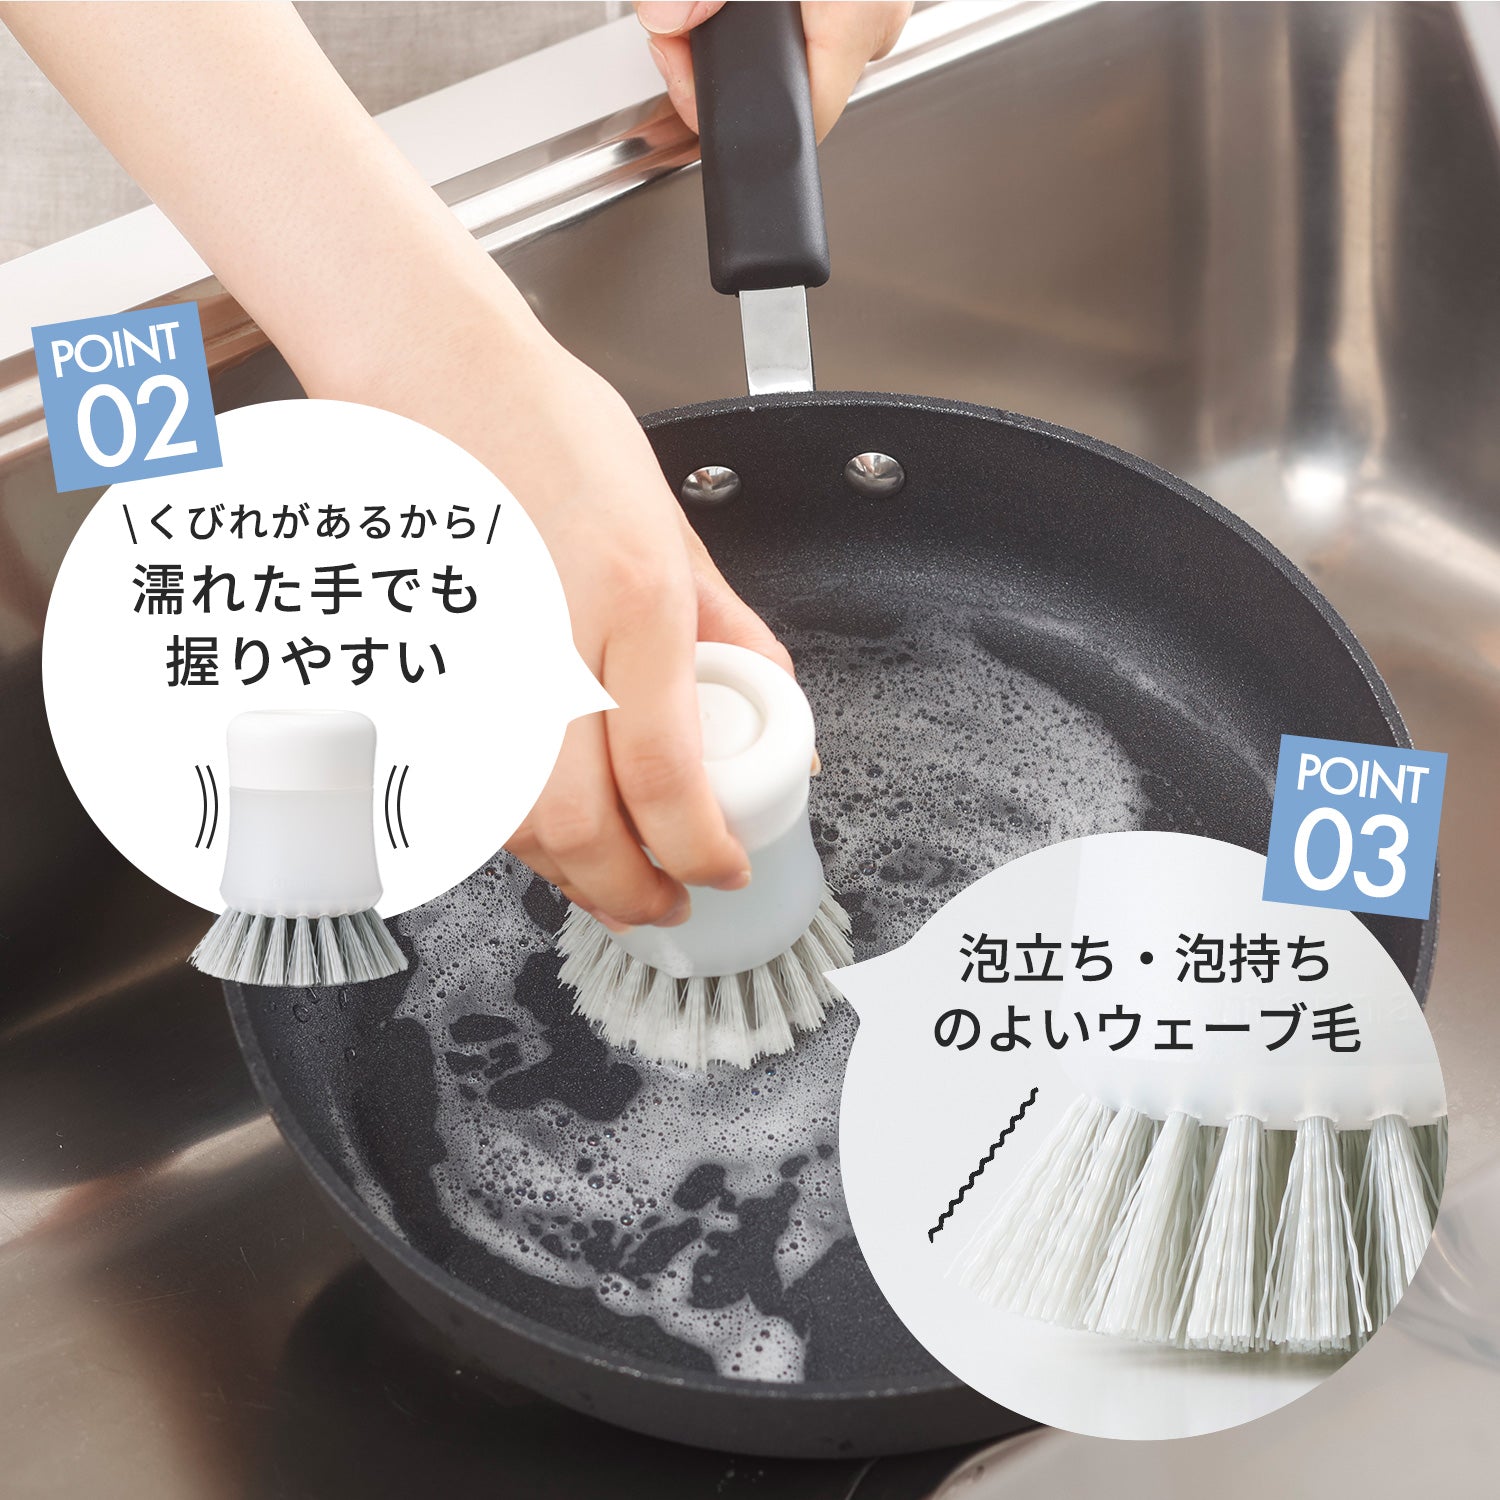 【預購】日本進口 Marna 一鍵式快速清洗廚房清潔刷 - Cnjpkitchen ❤️ 🇯🇵日本廚具 家居生活雜貨店